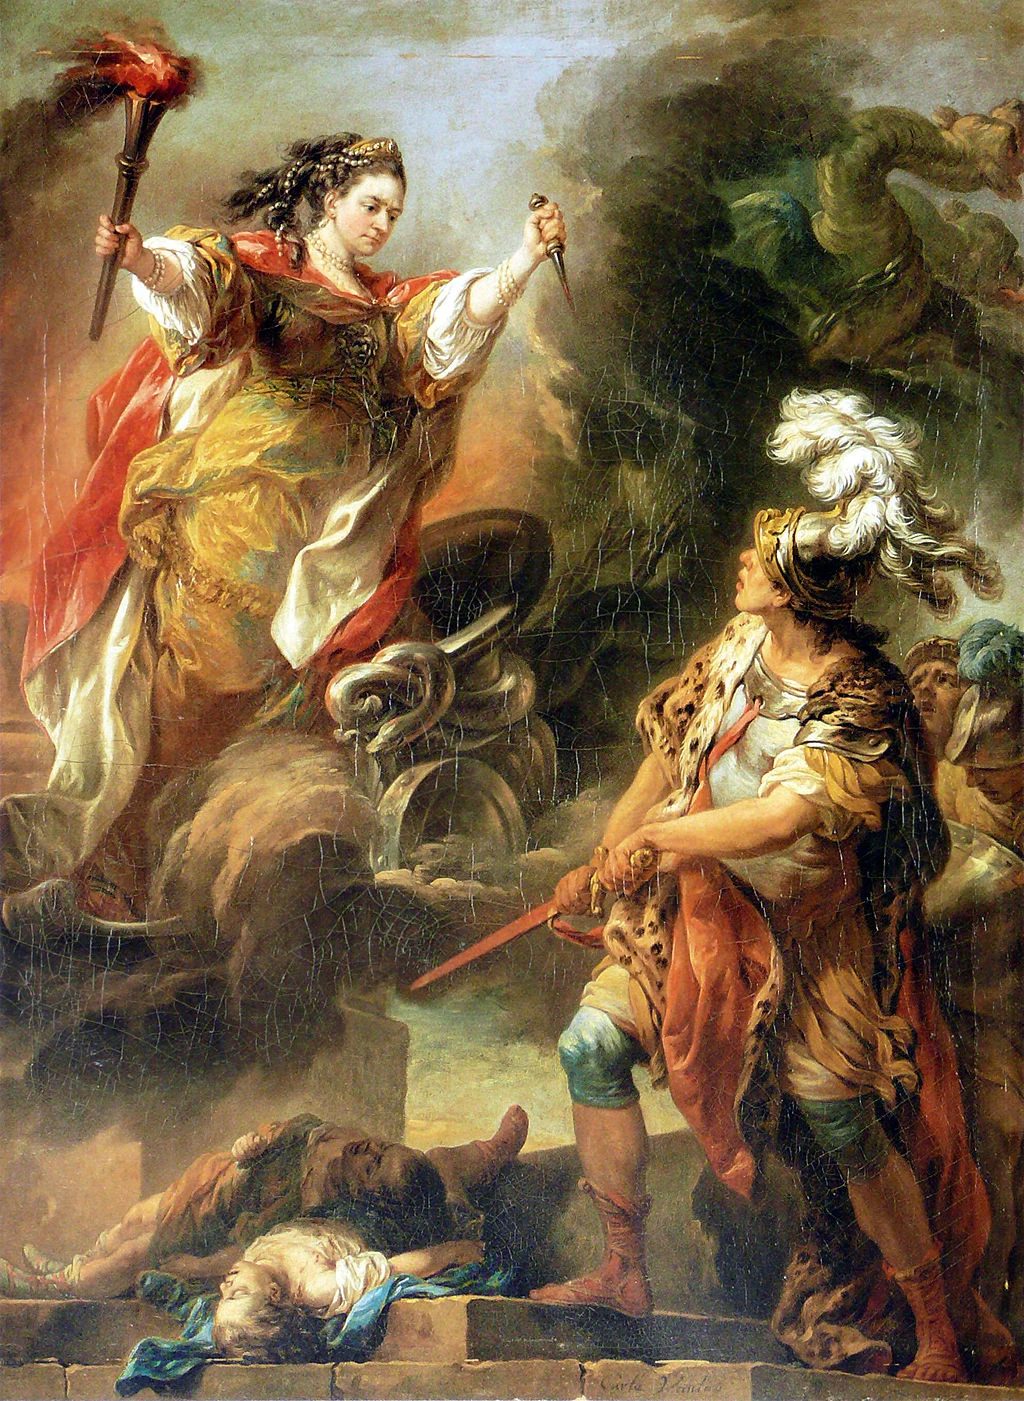 "La Clairon", grande comédienne (et courtisane) du XVIIIE siècle représentée par le peintre Van LOO en Médée (XVIIIe siècle). Image choisie par monsieurdefrance.com : Public domain Wikimedia Commons.